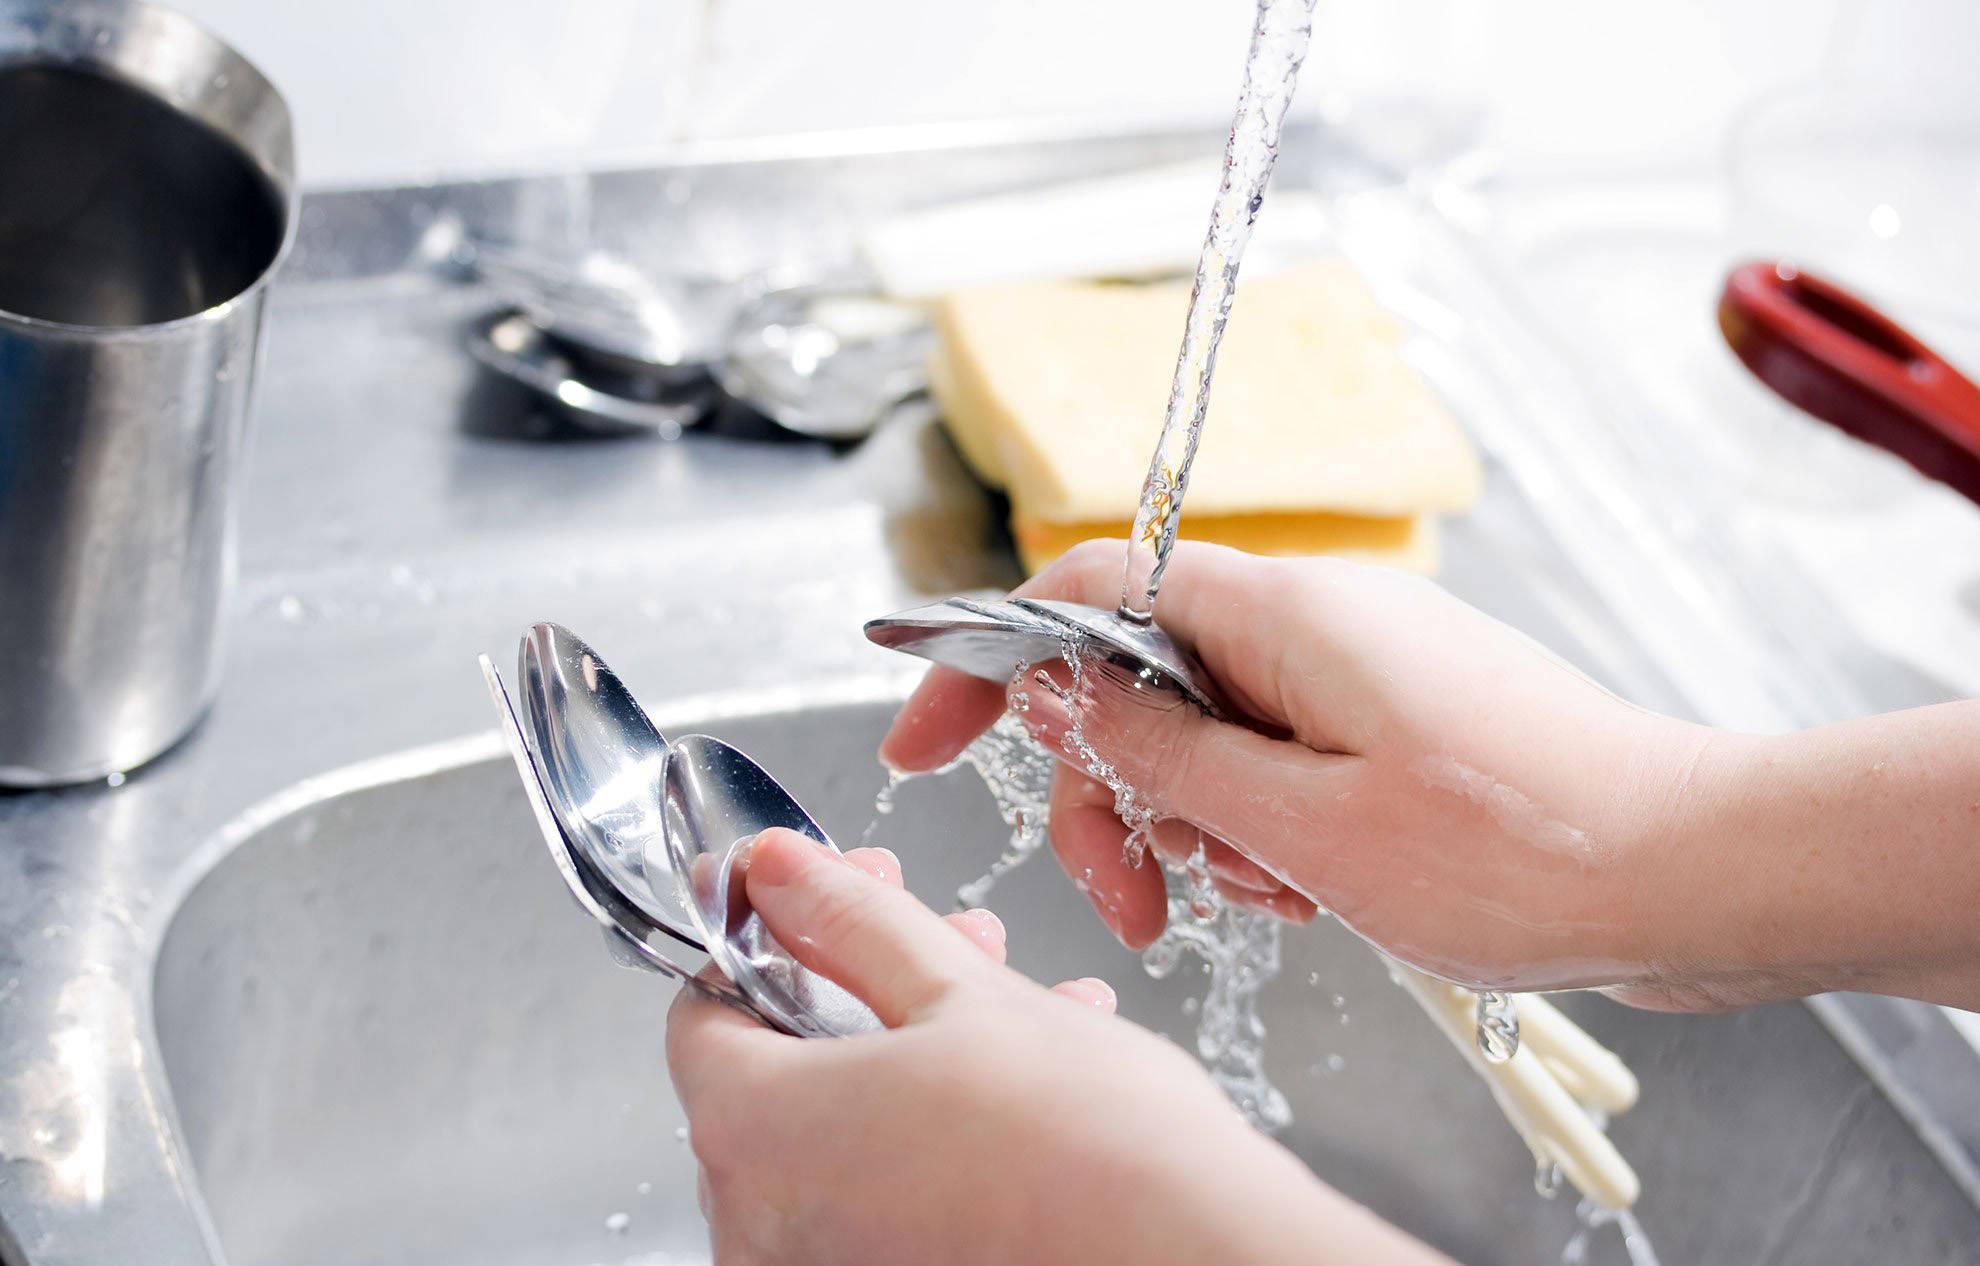 Как быстро помыть посуду своими руками за 5 минут в раковине - способы и средства